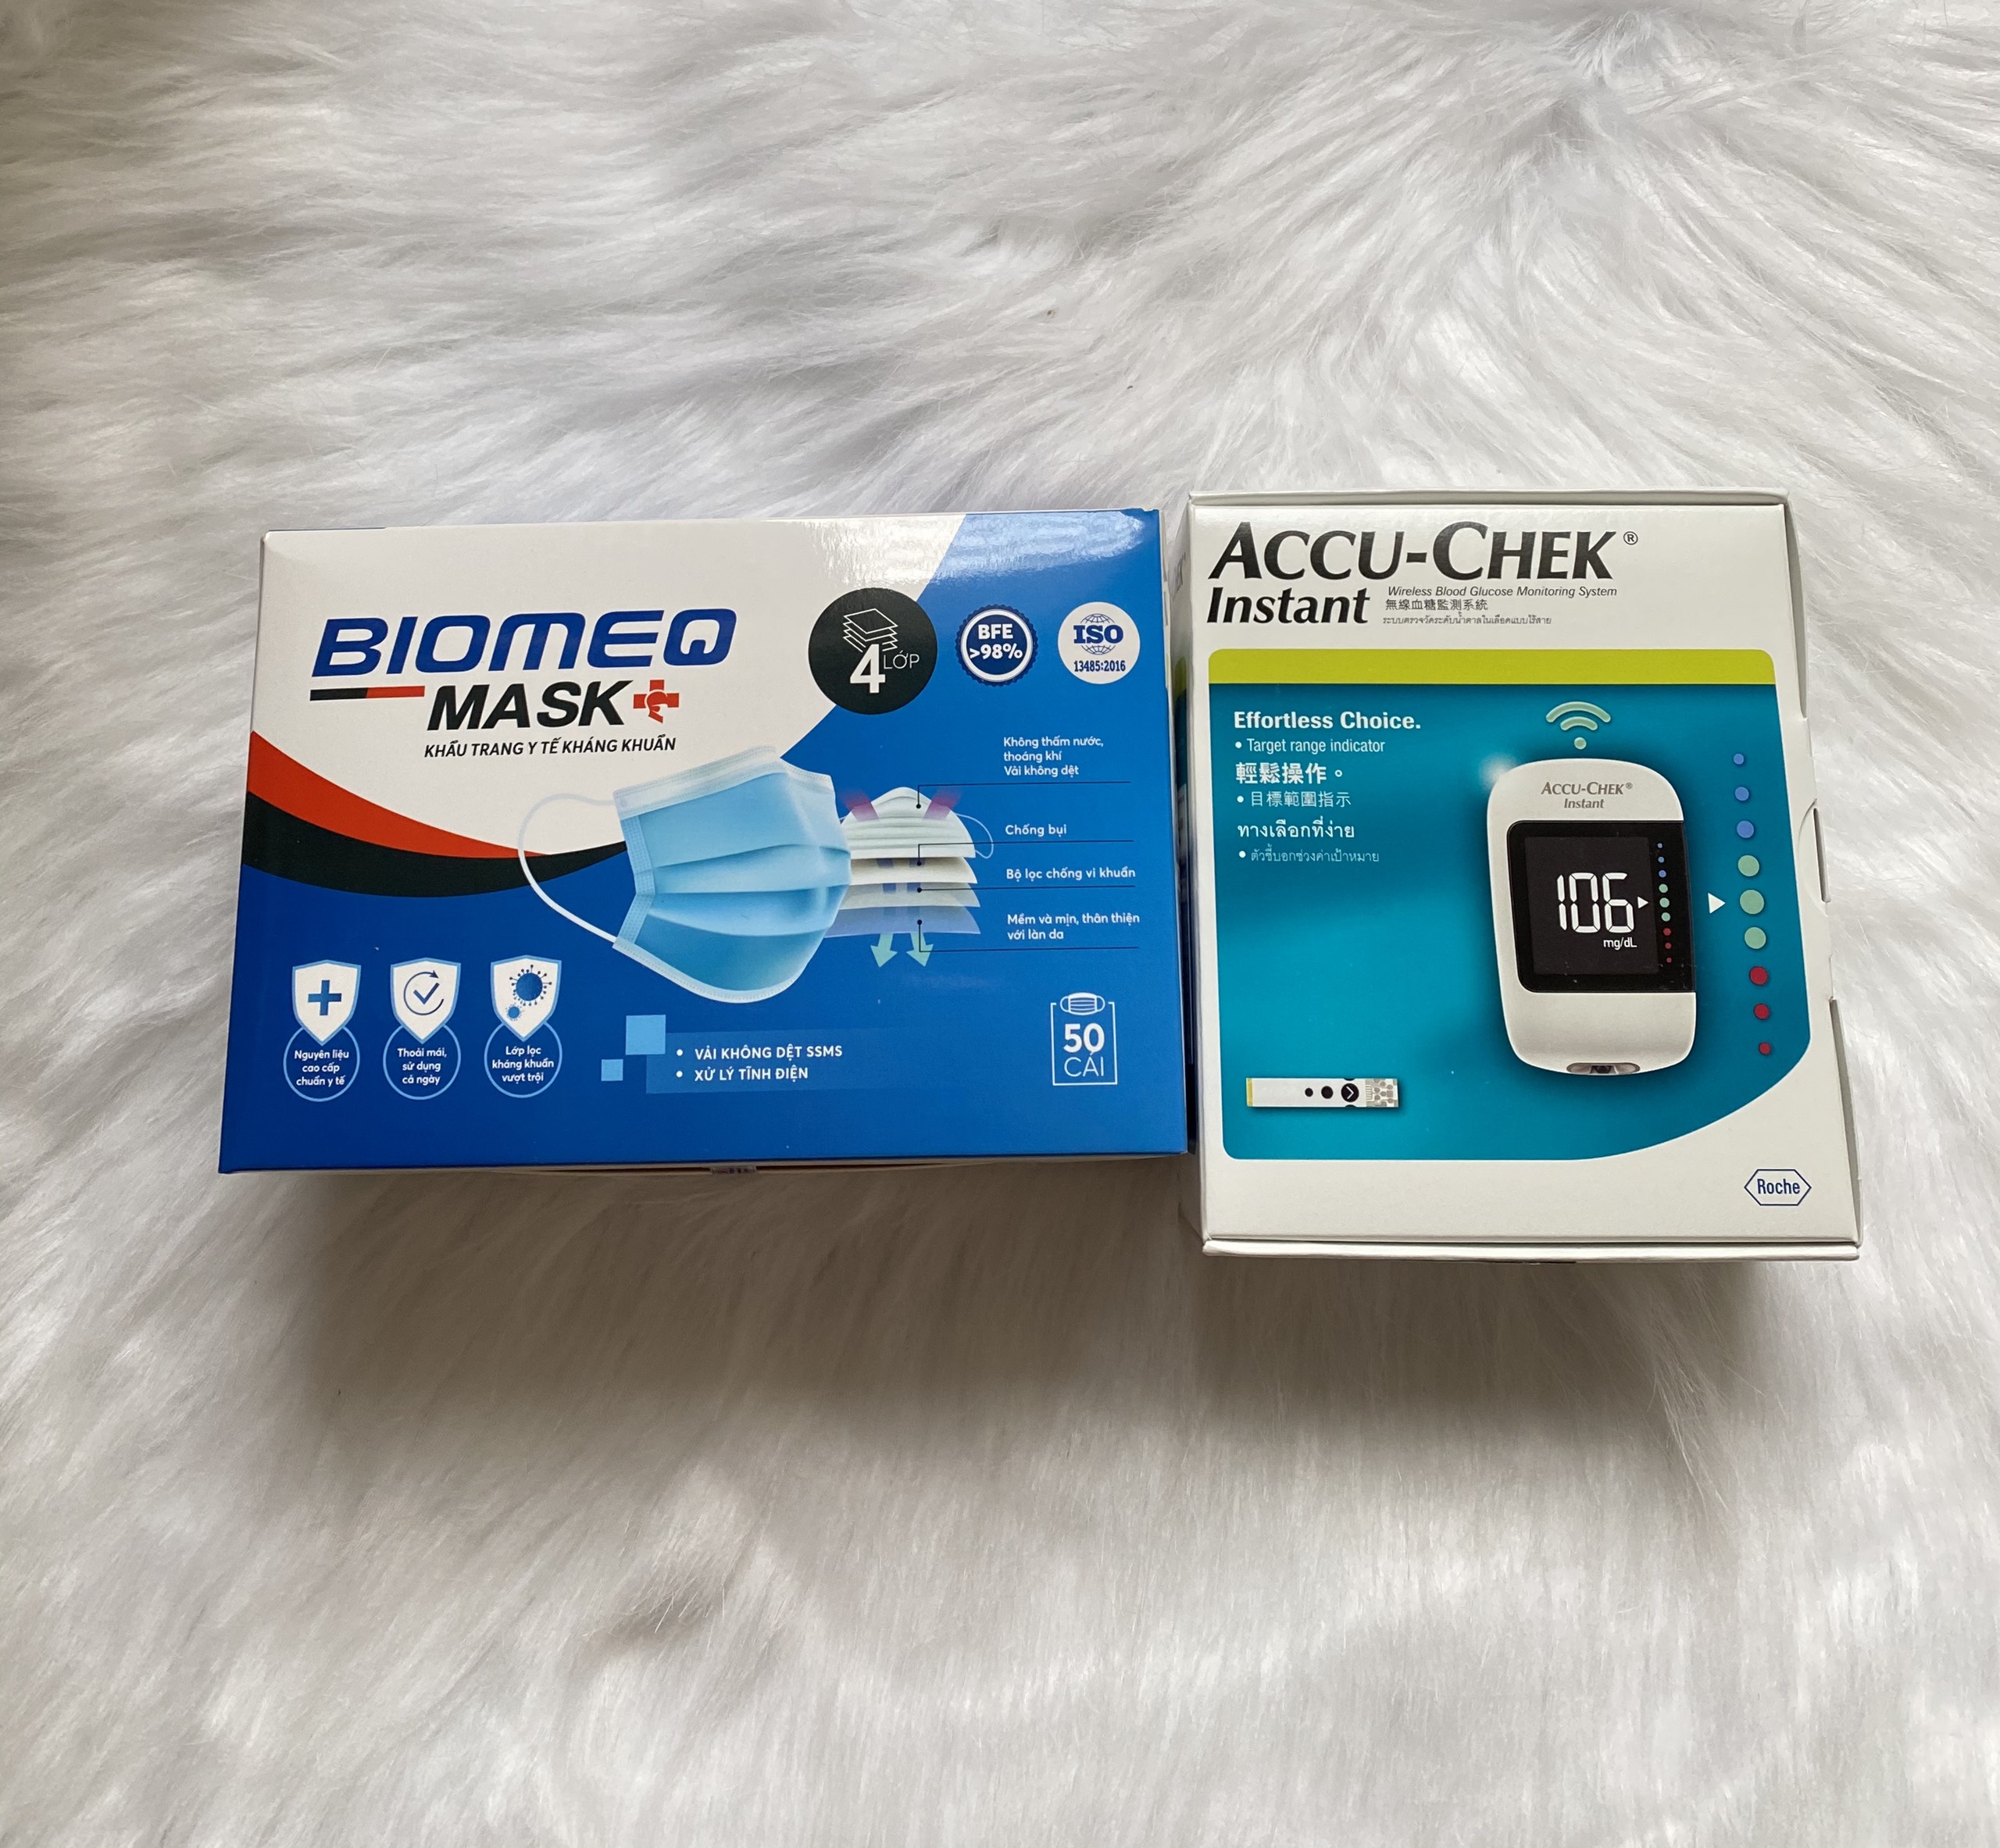 máy đo đường huyết Accu-chek Instant mmol/L + tặng kèm 1 hộp khẩu trang y tế cao cấp BIOMEQ